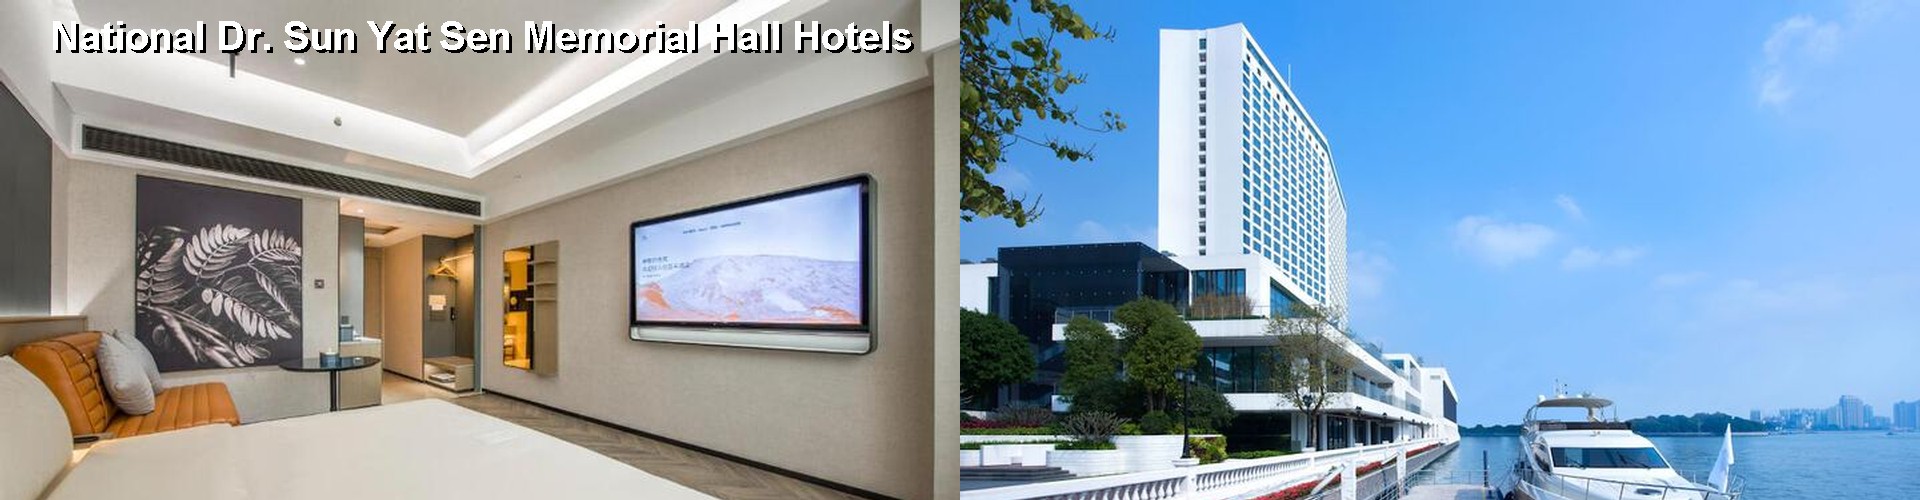 3 Best Hotels near National Dr. Sun Yat Sen Memorial Hall